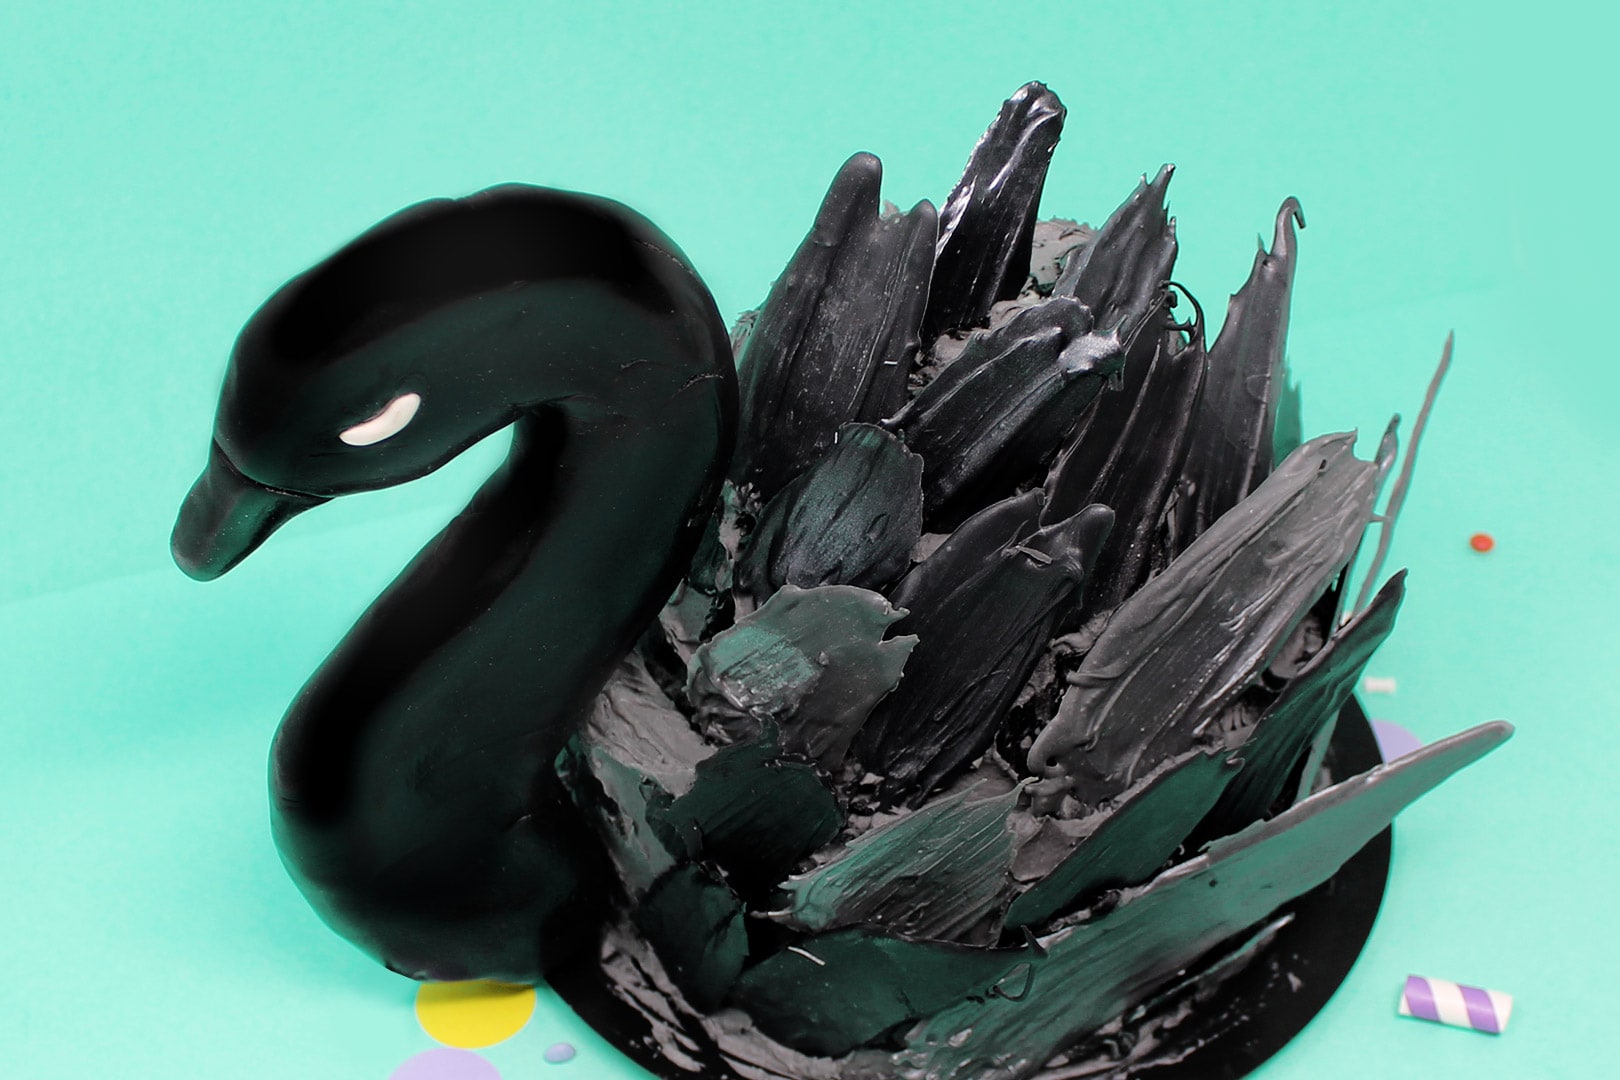 torta-cigno-nero-super-colors-paintbrush-cake-black-swan-3-min